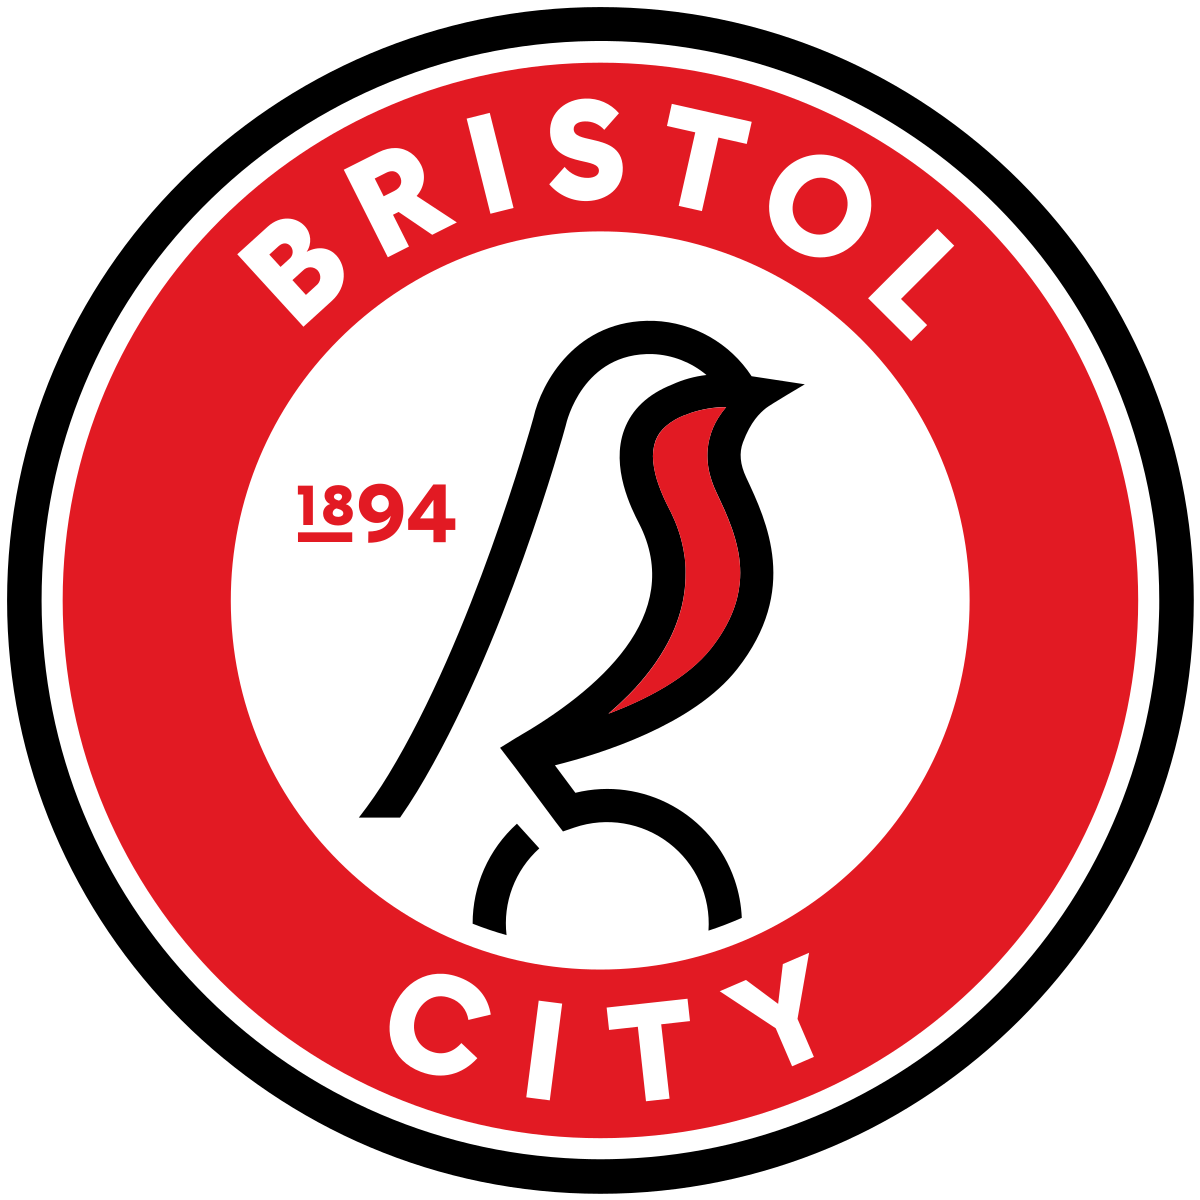 Bristol City v Reading - Hospitality